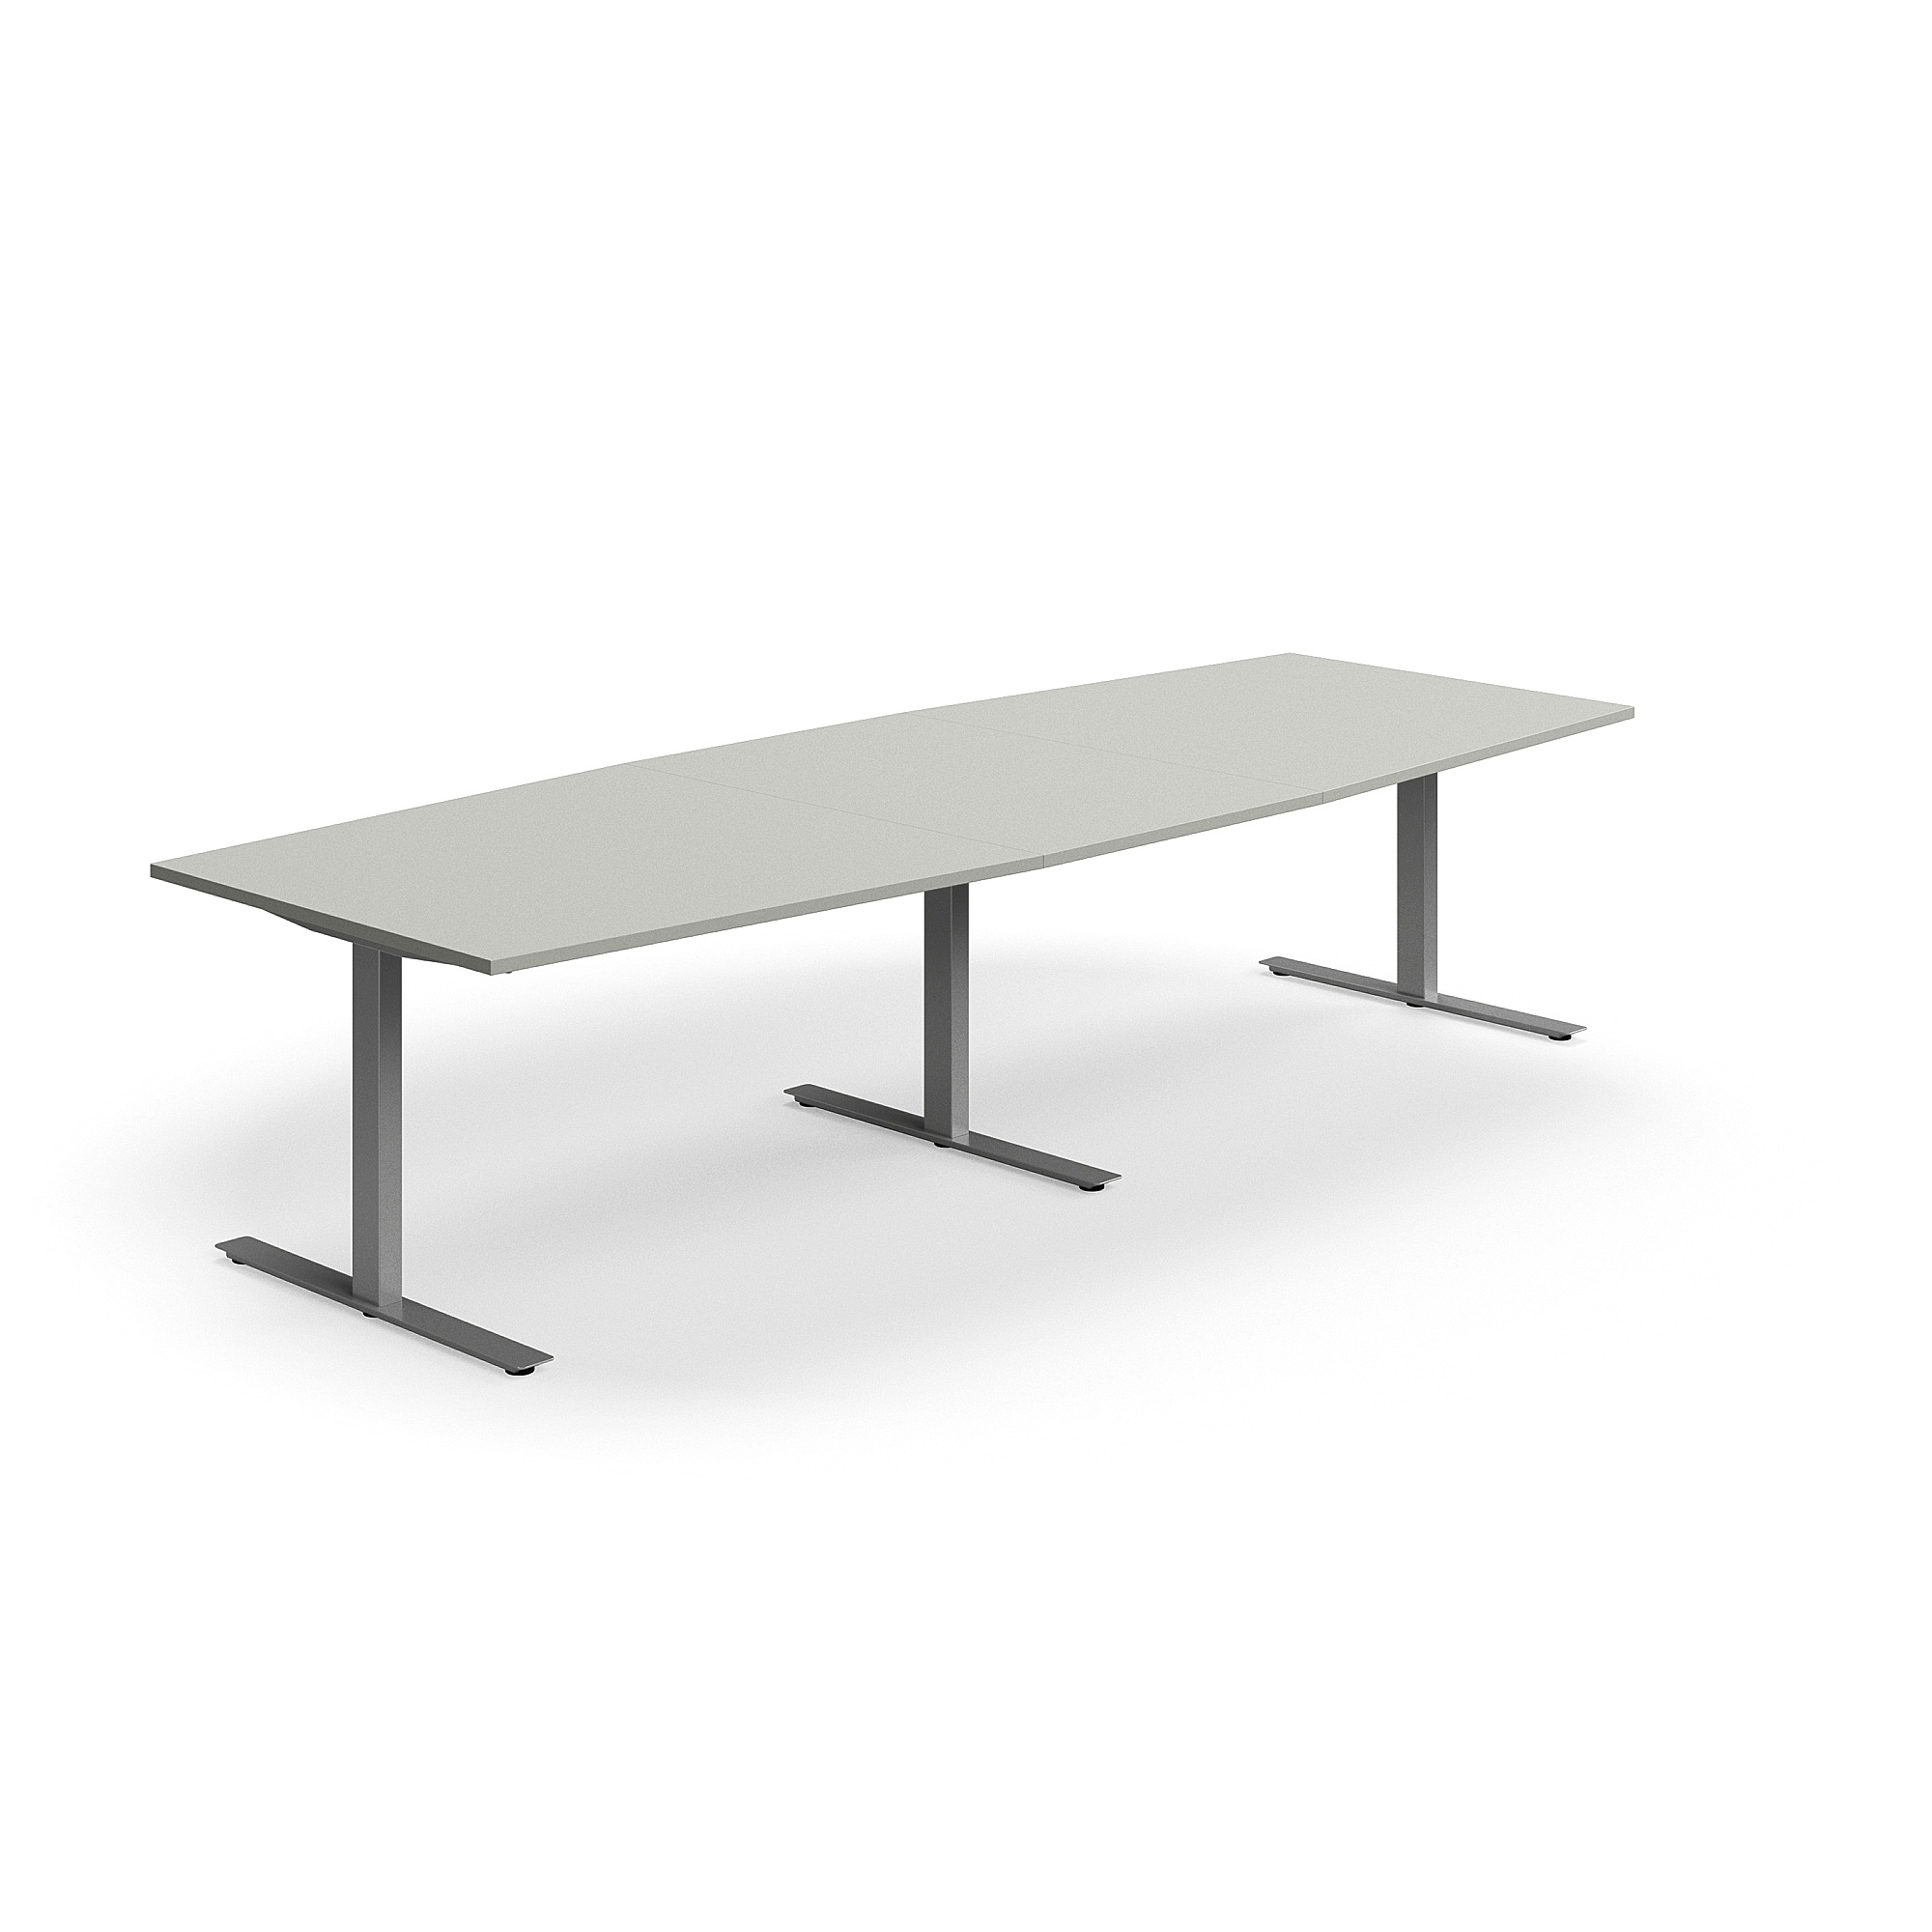 Jednací stůl QBUS, T-nohy, 3200x1200 mm, tvar člunu, stříbrná podnož, světle šedá